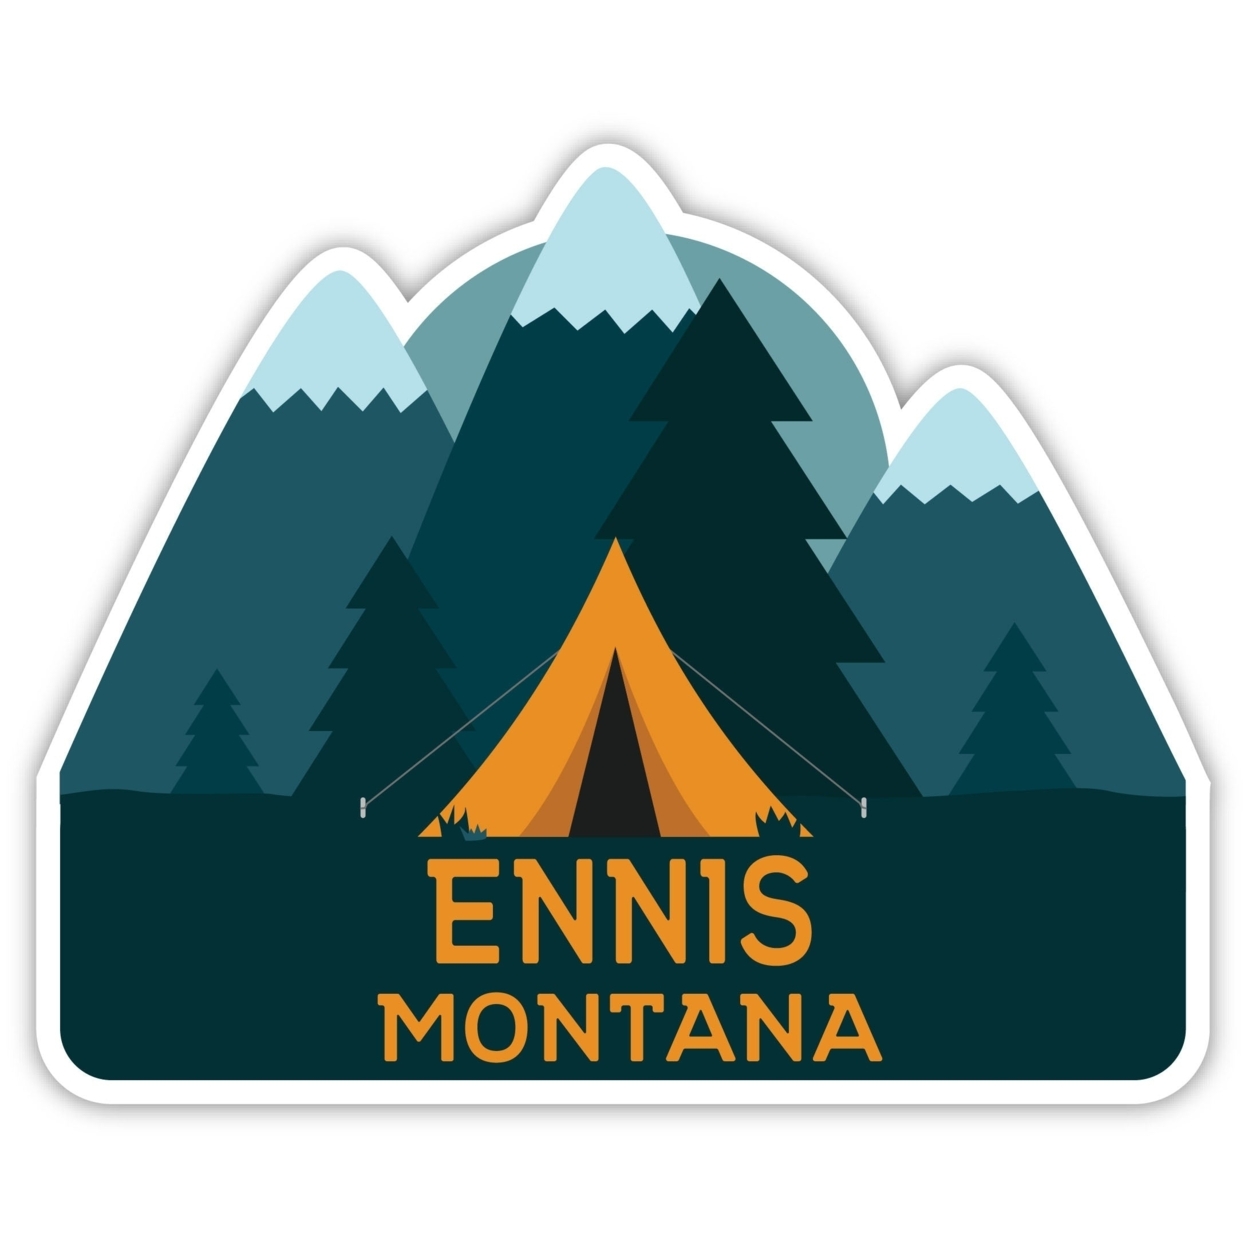 Ennis Montana Souvenir Decorative Stickers (Choose Theme And Size) - Single Unit, 2-Inch, Tent